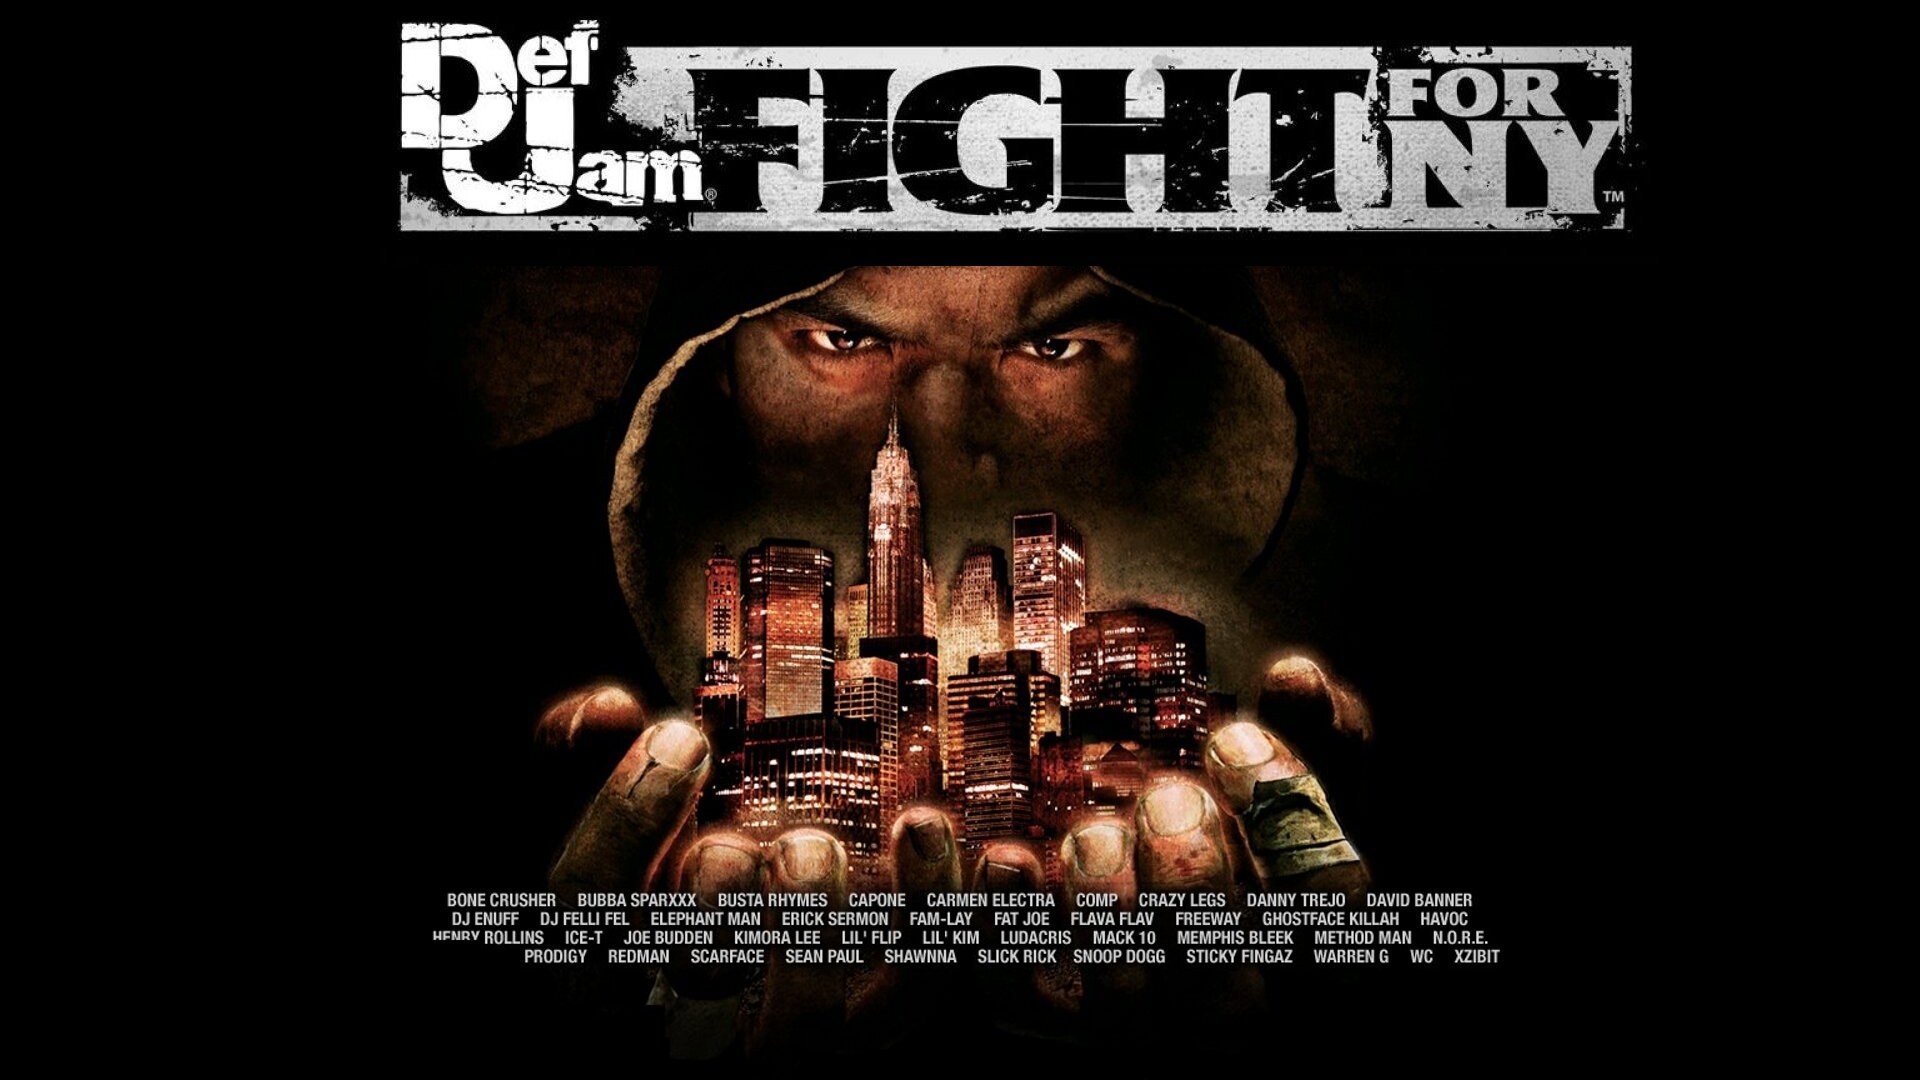 Los mejores fondos de pantalla de Def Jam: Fight For Ny para la pantalla del teléfono